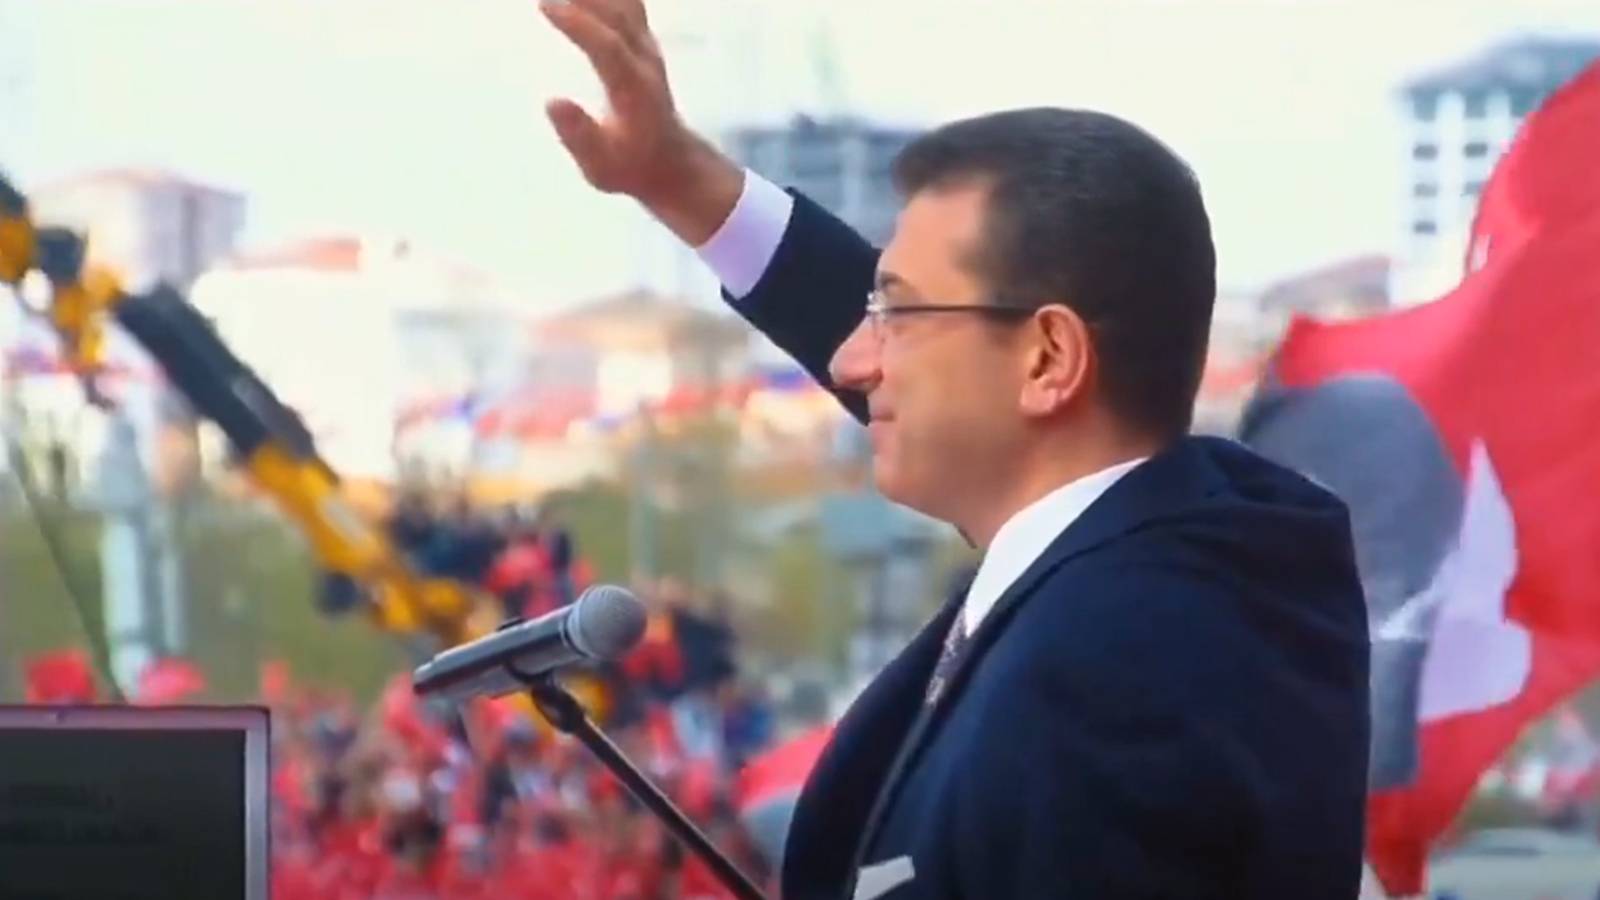 İmamoğlu'ndan AKP seçim aracına tepki: Saygı göstermeyi bilmiyorlar ama öğrenecekler